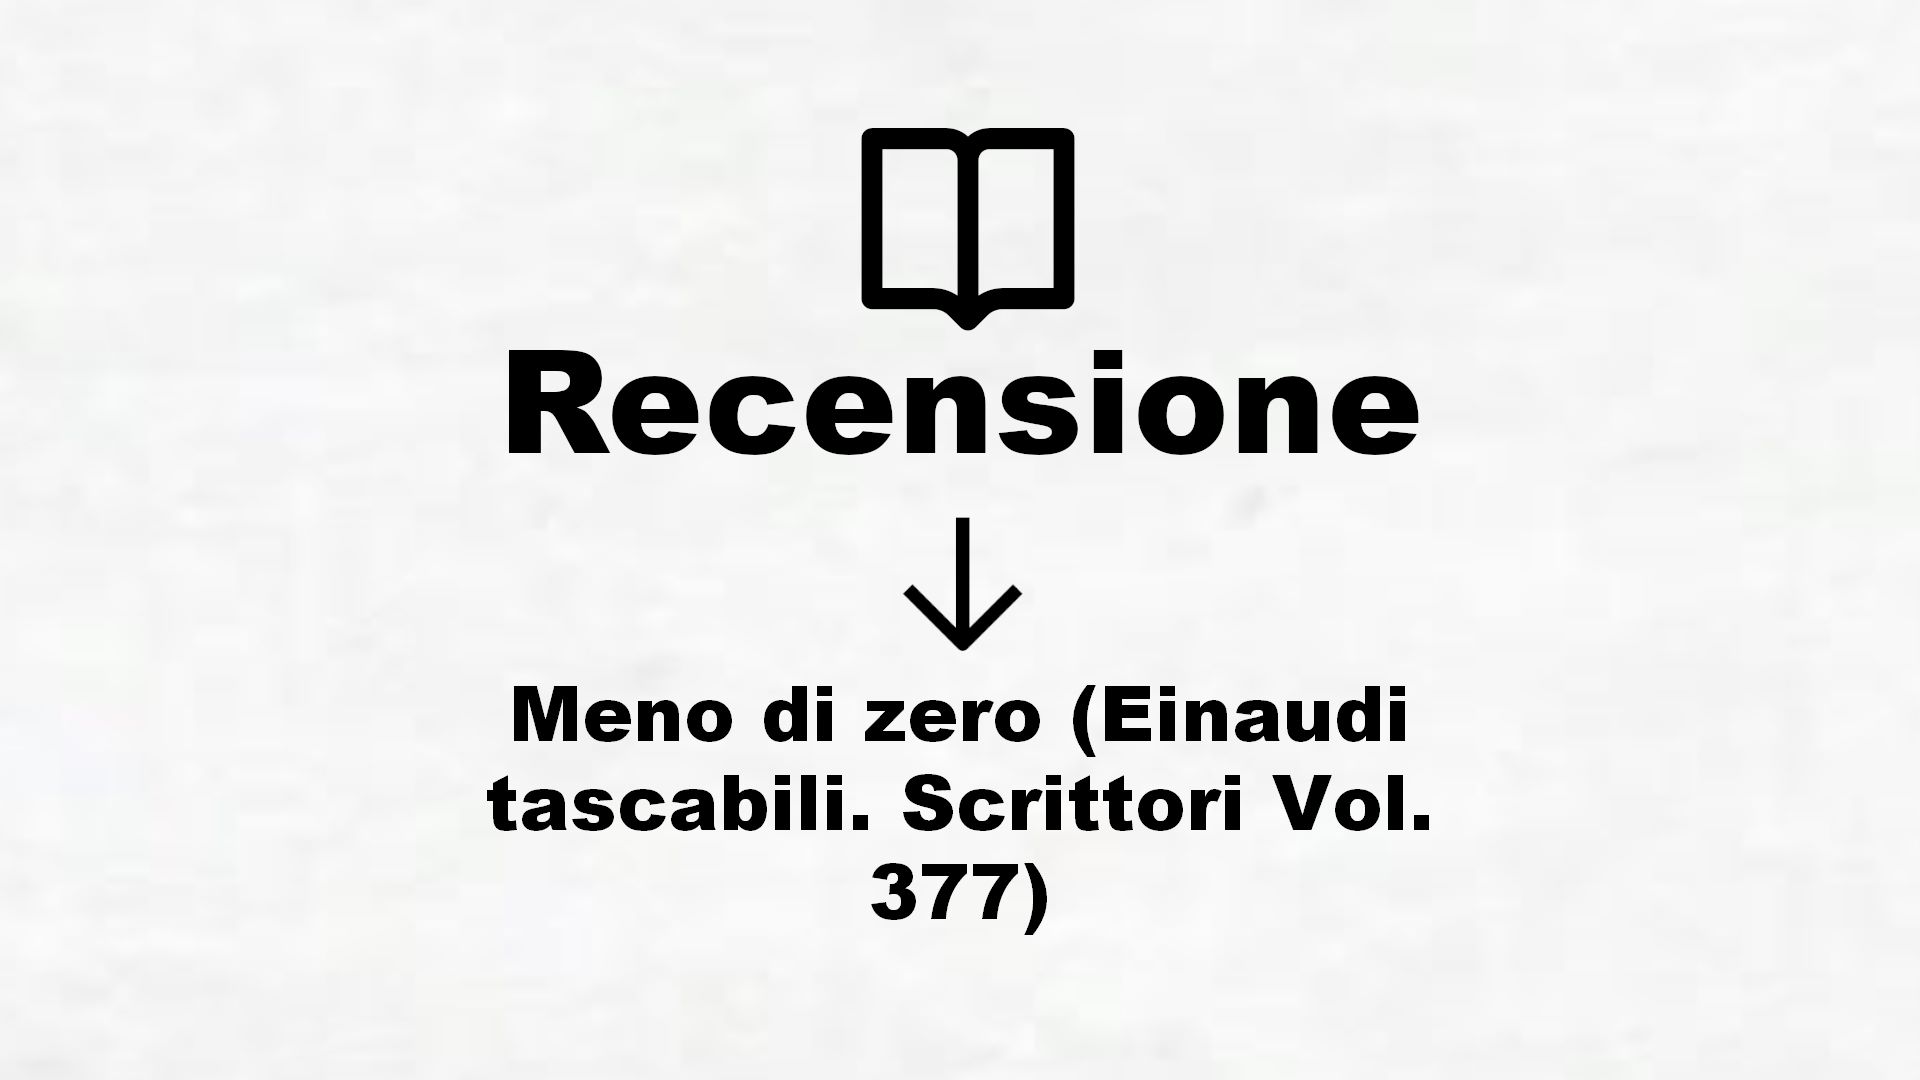 Meno di zero (Einaudi tascabili. Scrittori Vol. 377) – Recensione Libro